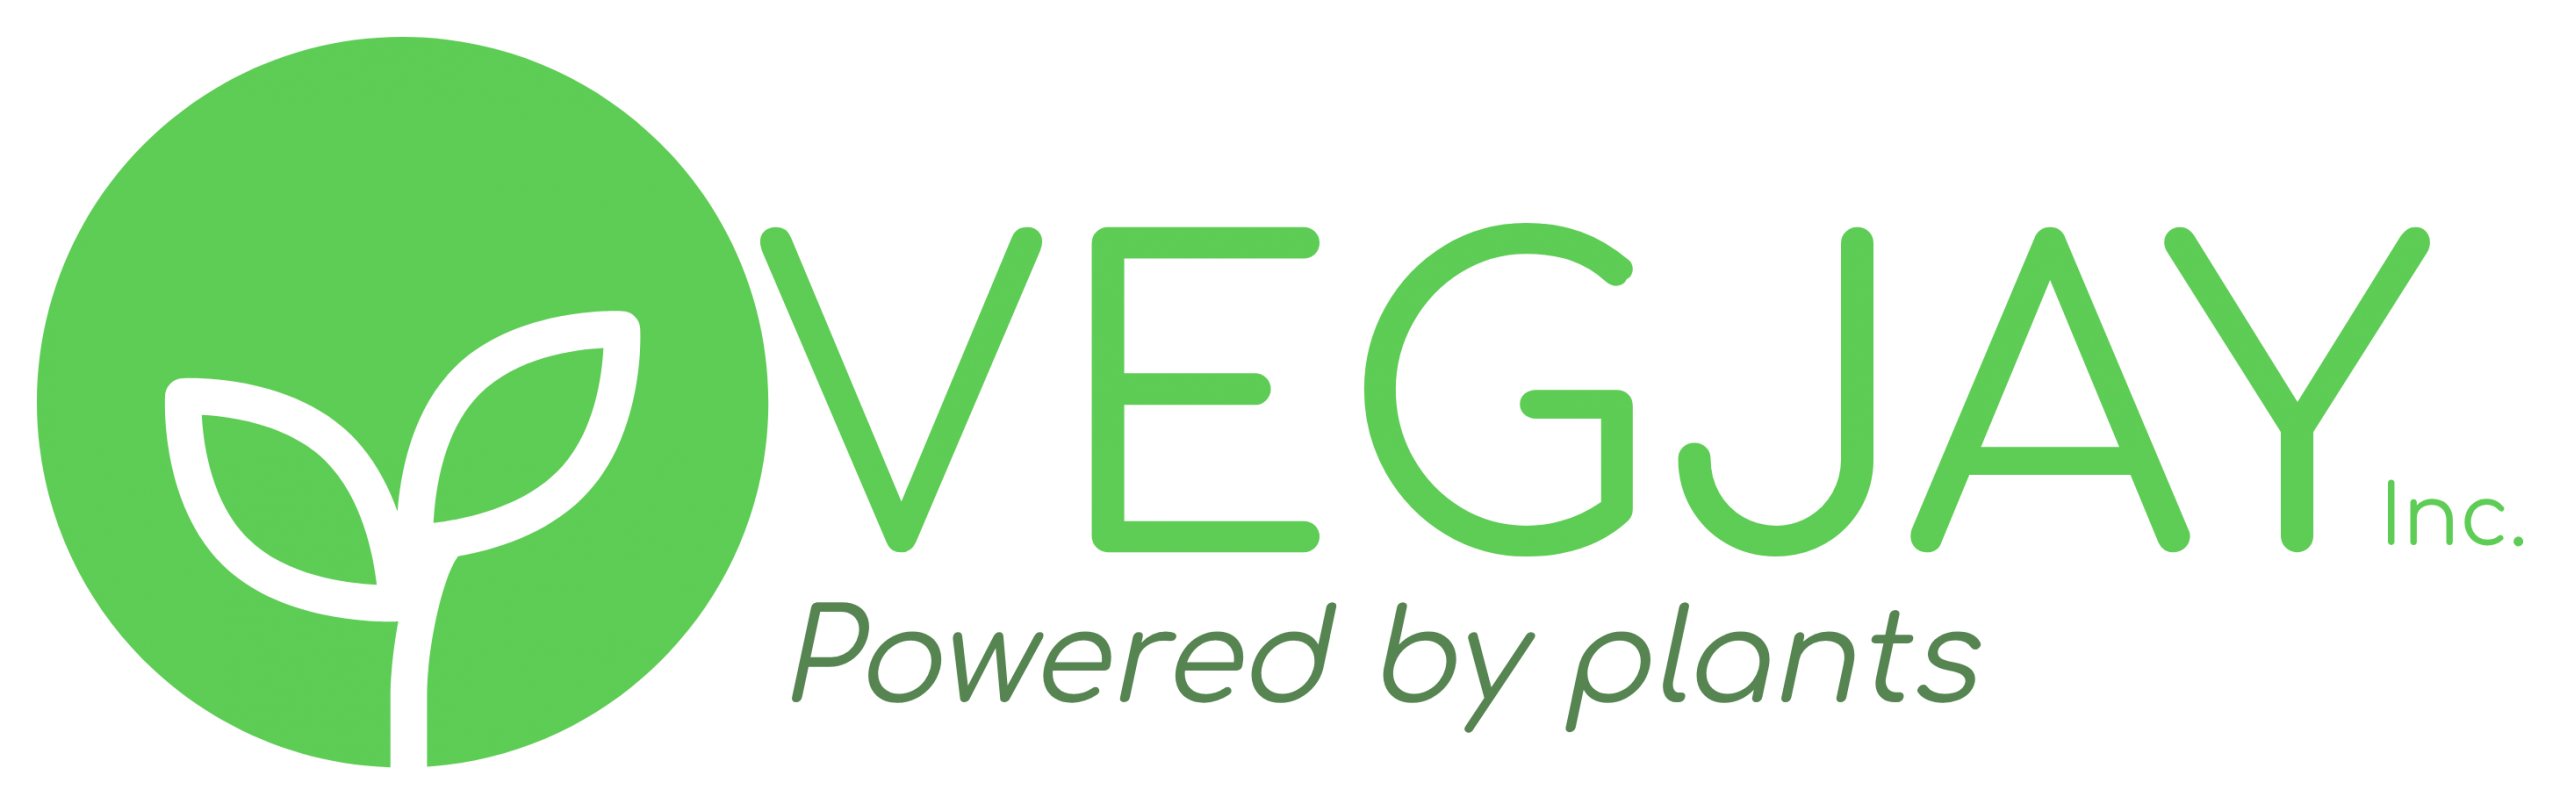 Vegjay - #poweredbyplants